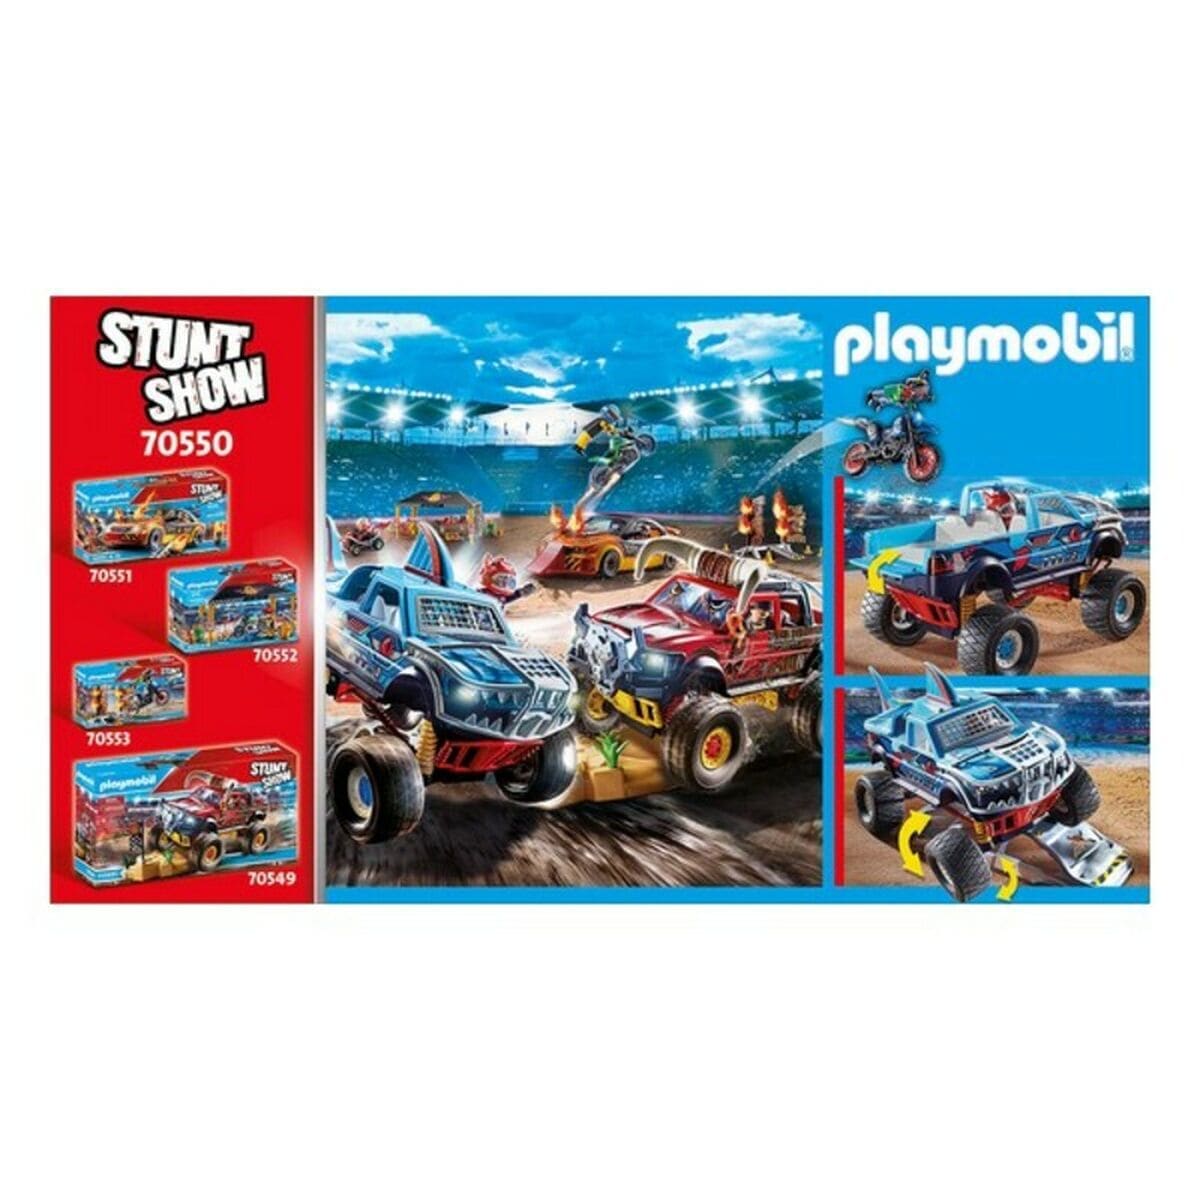 Playmobil Spielzeug | Kostüme > Spielzeug und Spiele > Puppen und Plüschtiere Monster Truck Shark Playmobil 70550 (45 pcs)